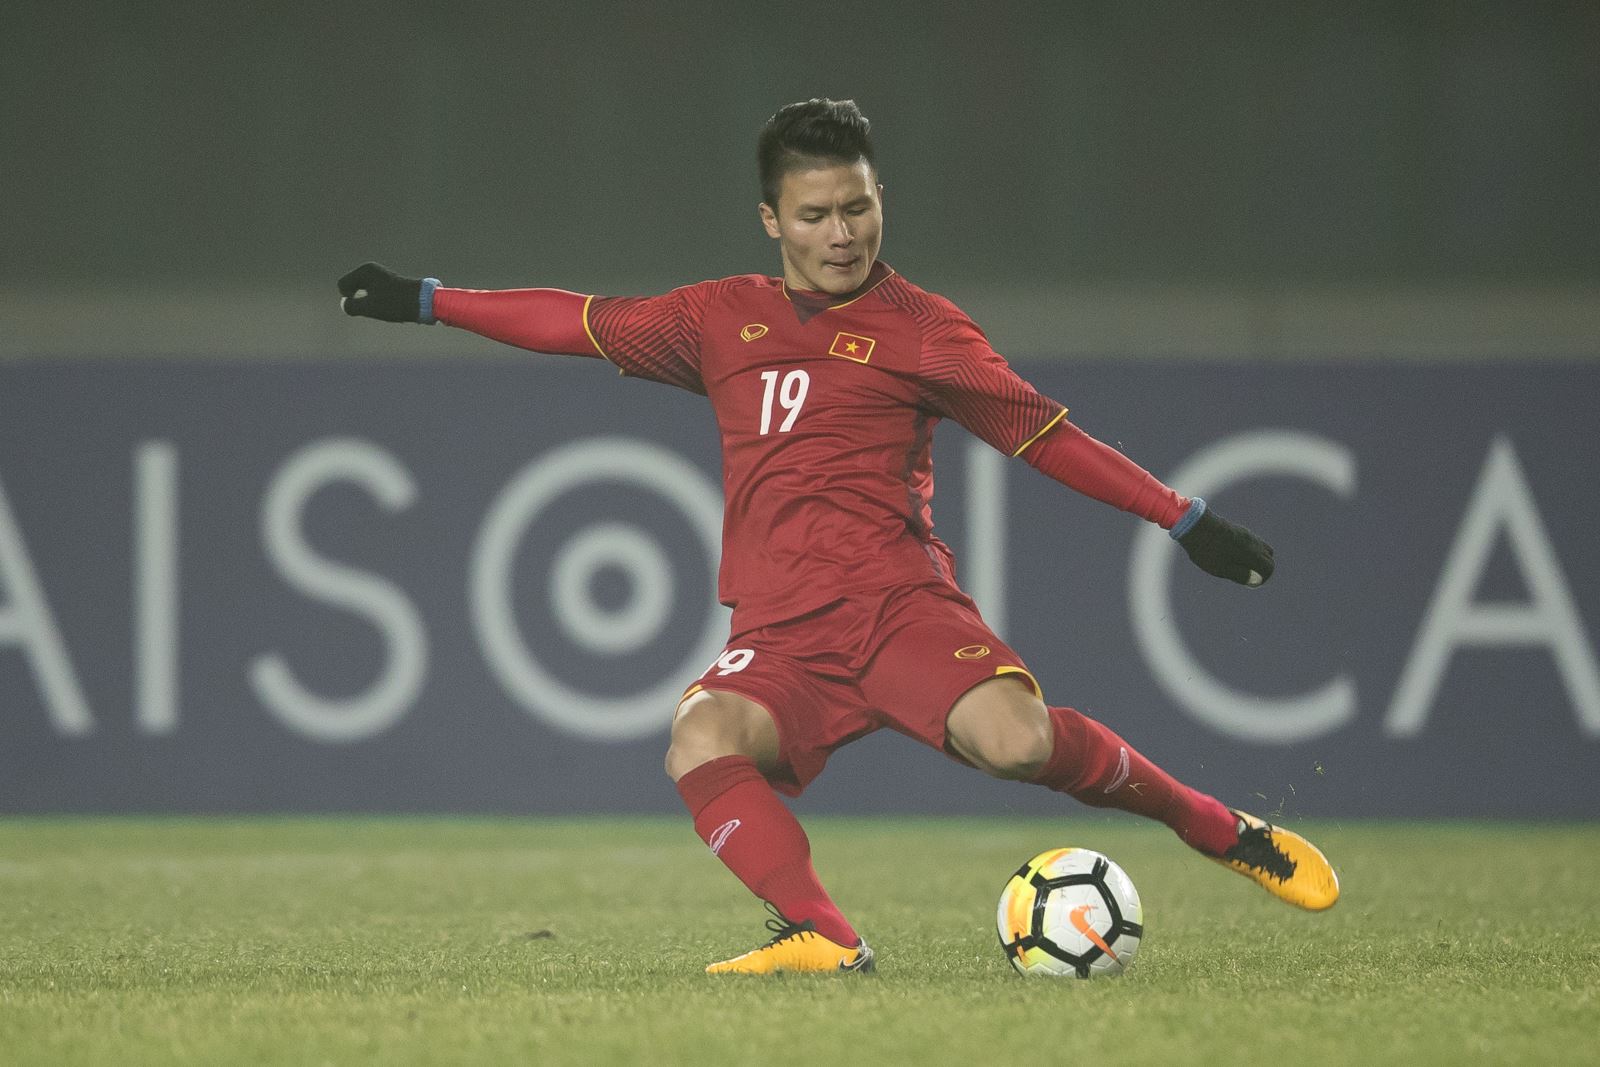 CẬP NHẬT tin tối 12/9: Quang Hải được xem là SAO ở AFF Cup. Raiola hứa đưa Pogba sang Tây Ban Nha